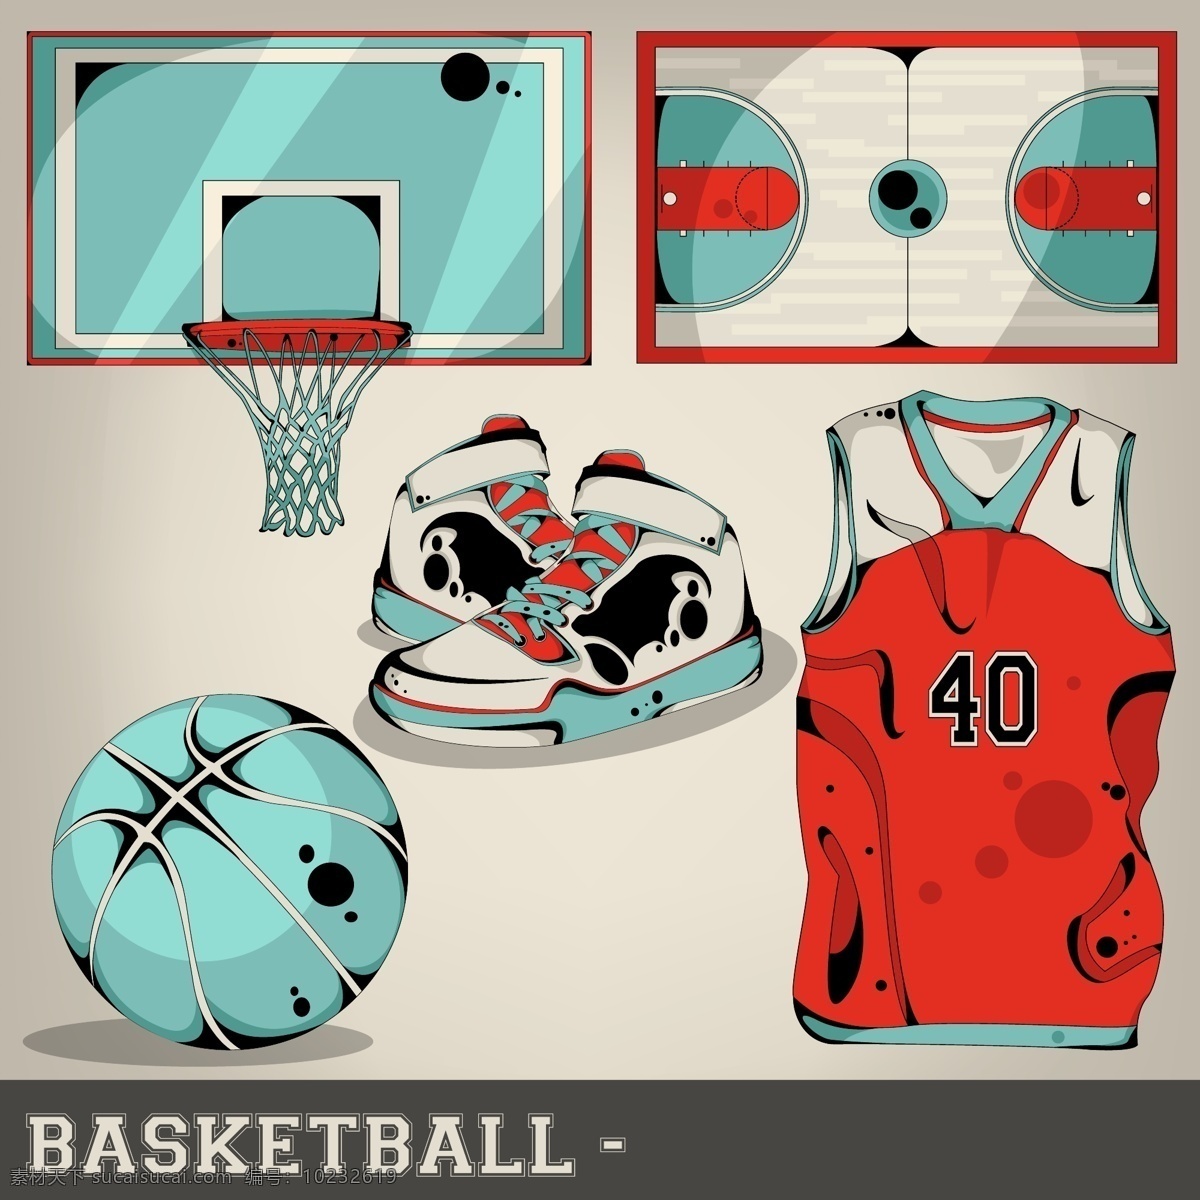 篮球运动 篮球 卡通 撞色 篮球场 篮球筐 篮球鞋 动漫动画 动漫人物 白色